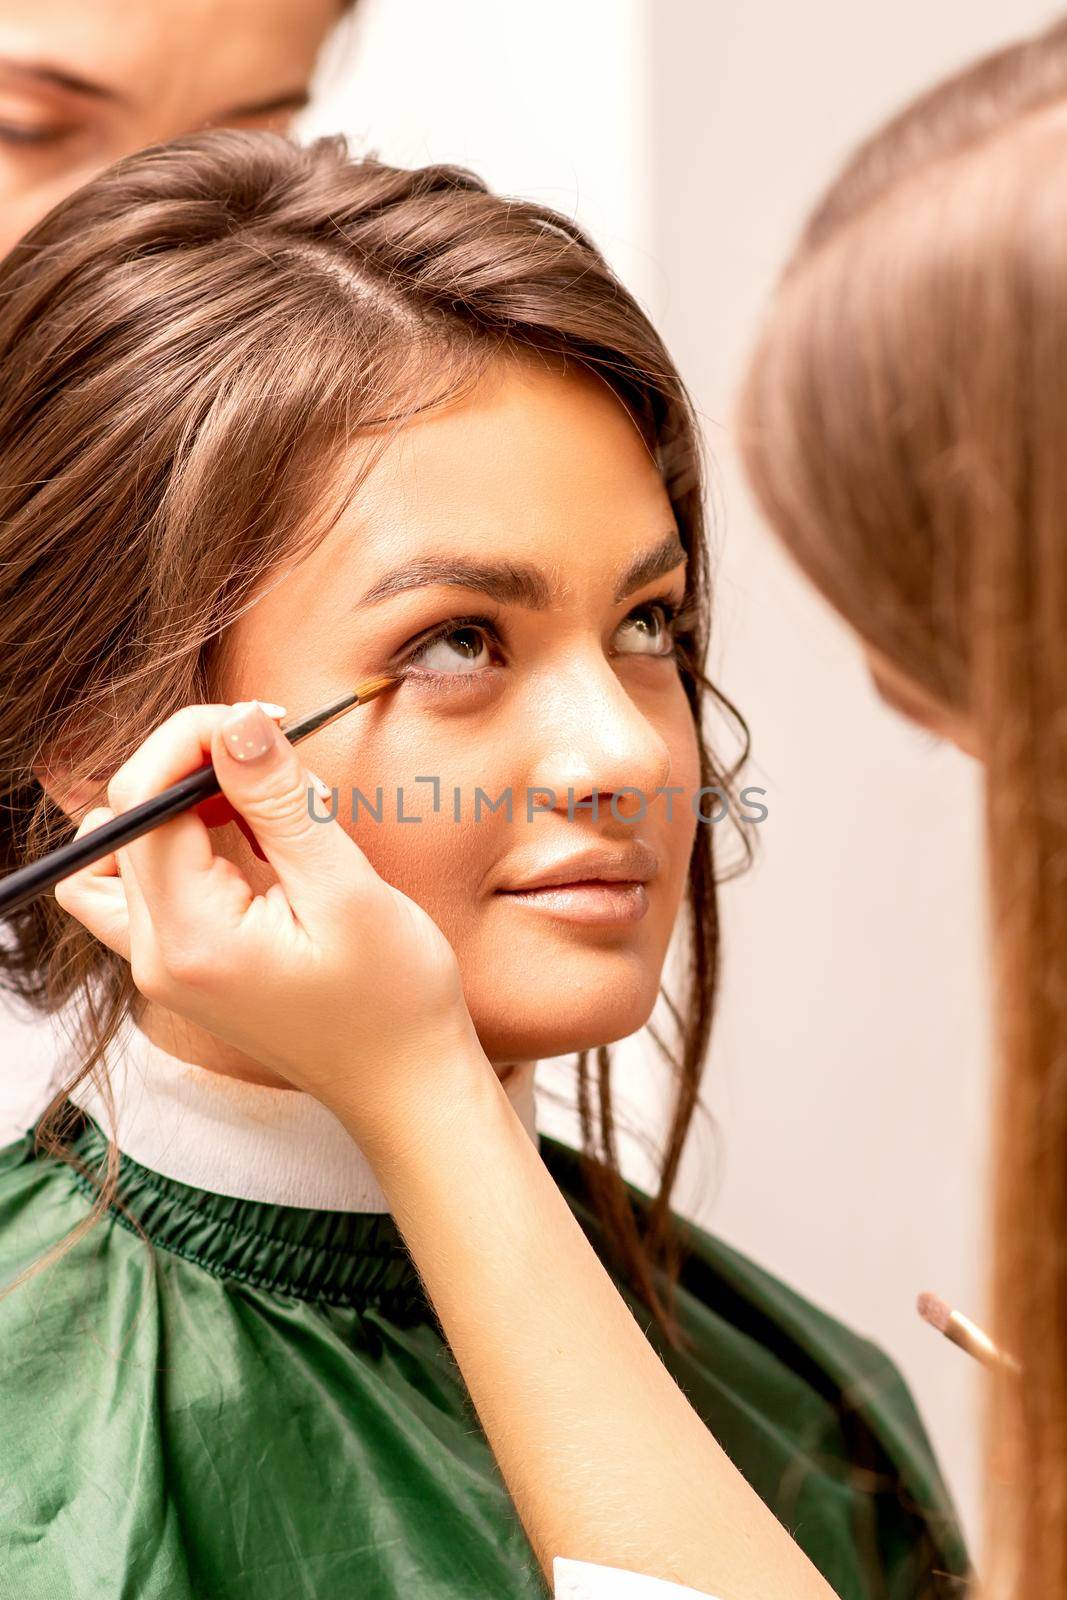 The makeup artist applies a concealer under the eyes using a makeup brush. by okskukuruza